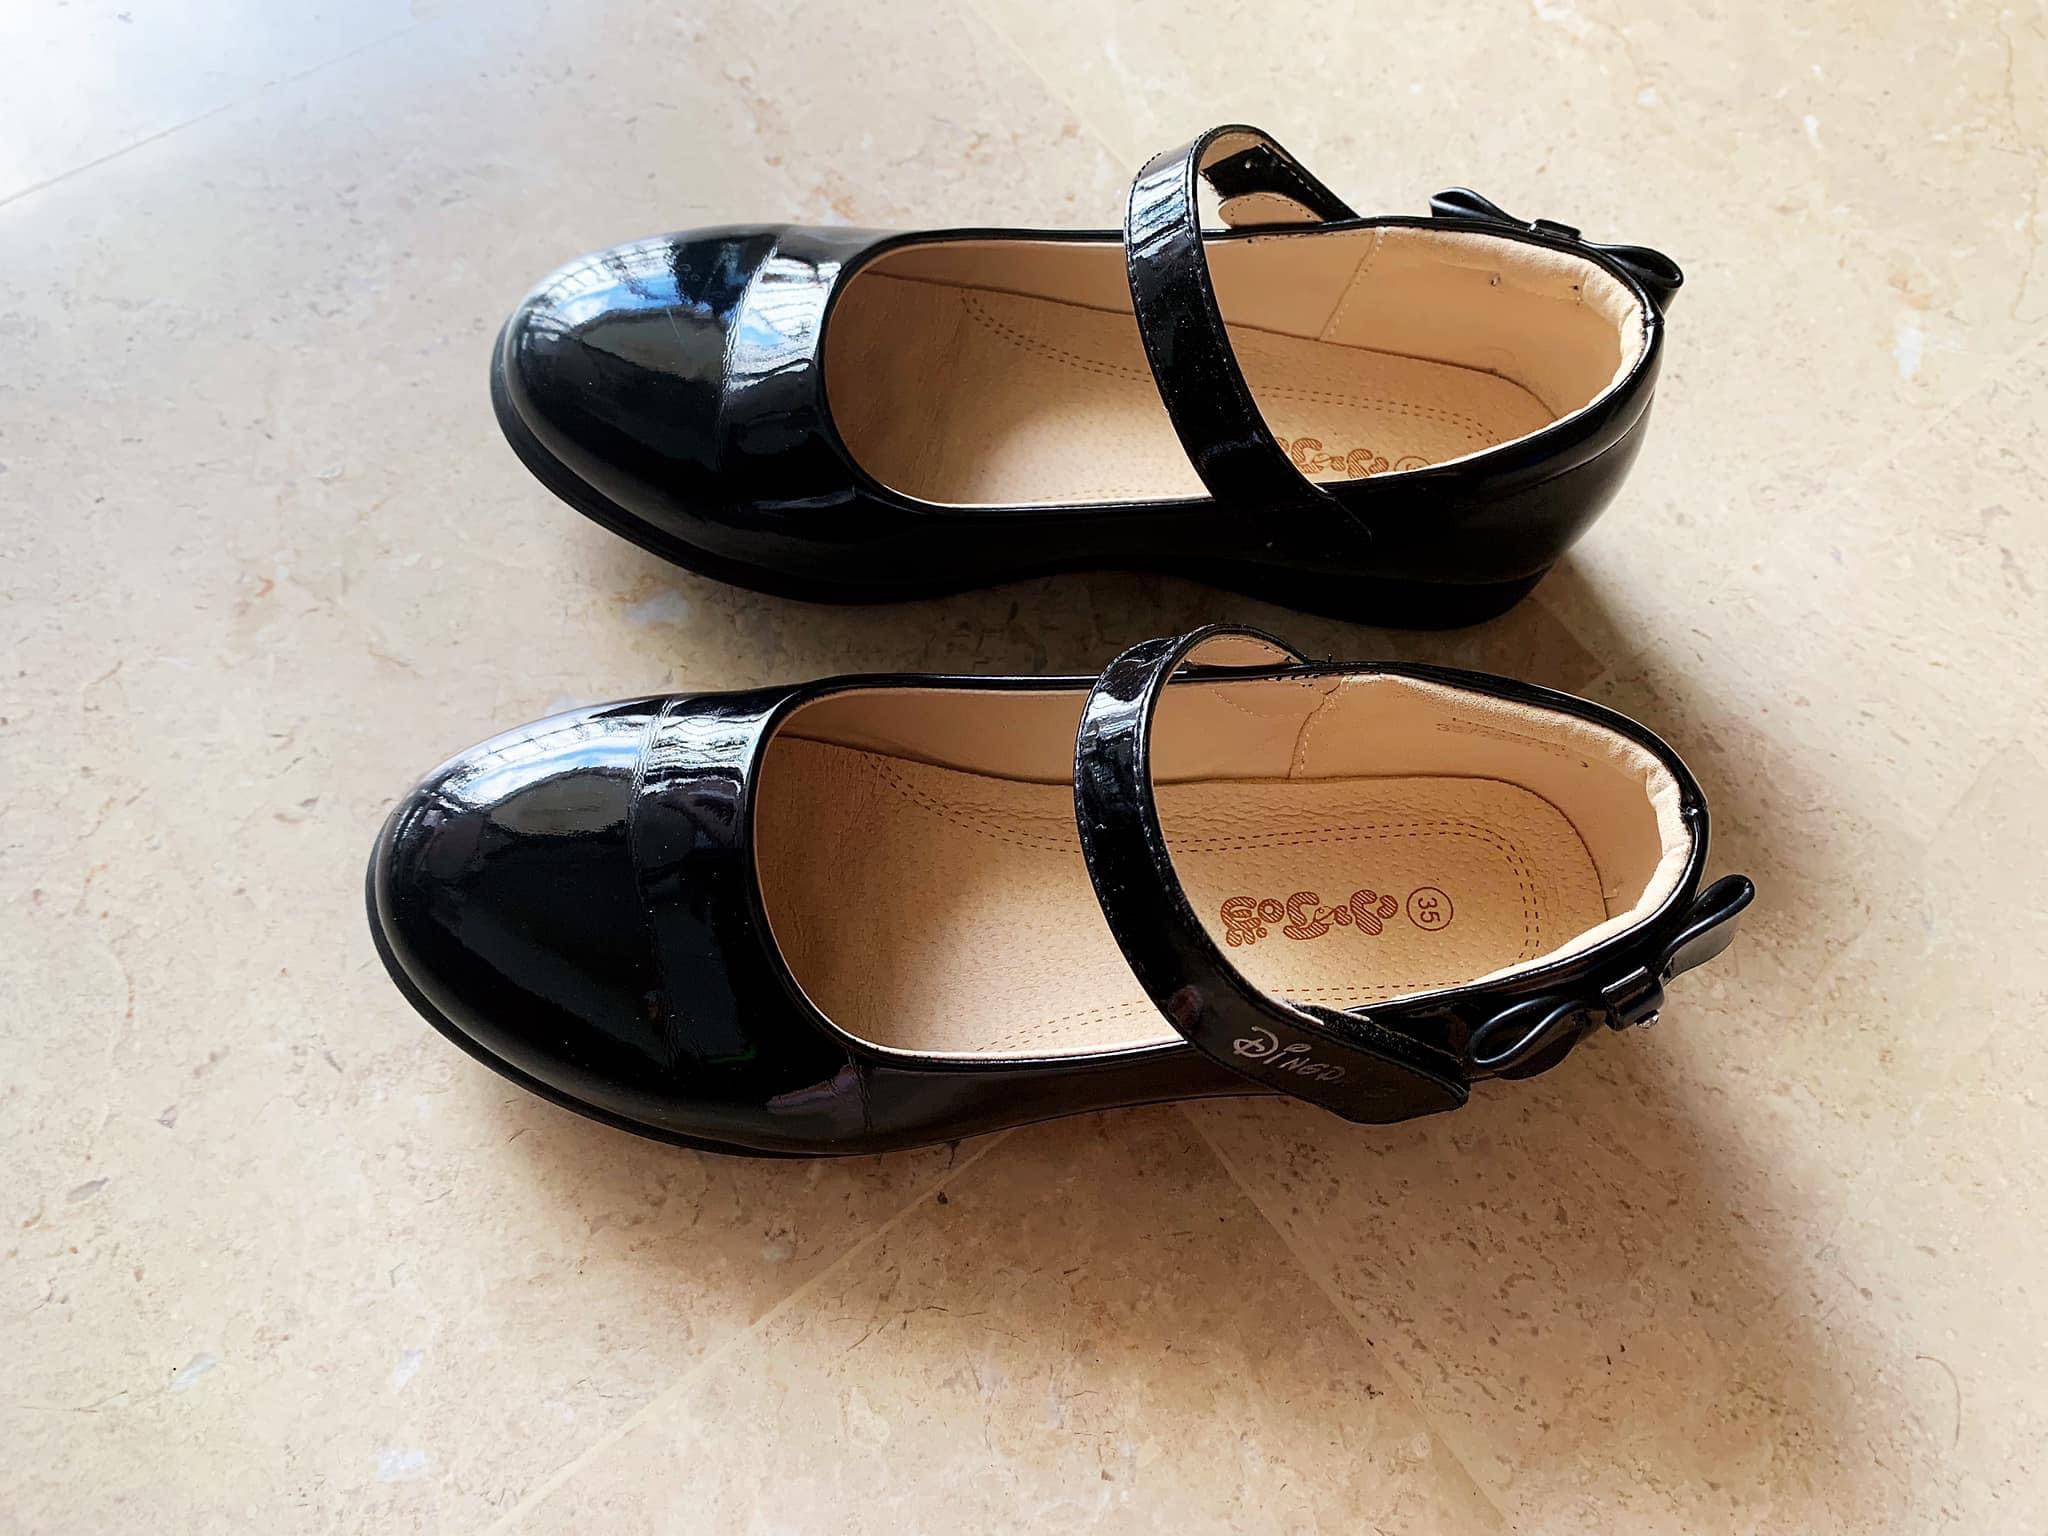 girls formal black shoes